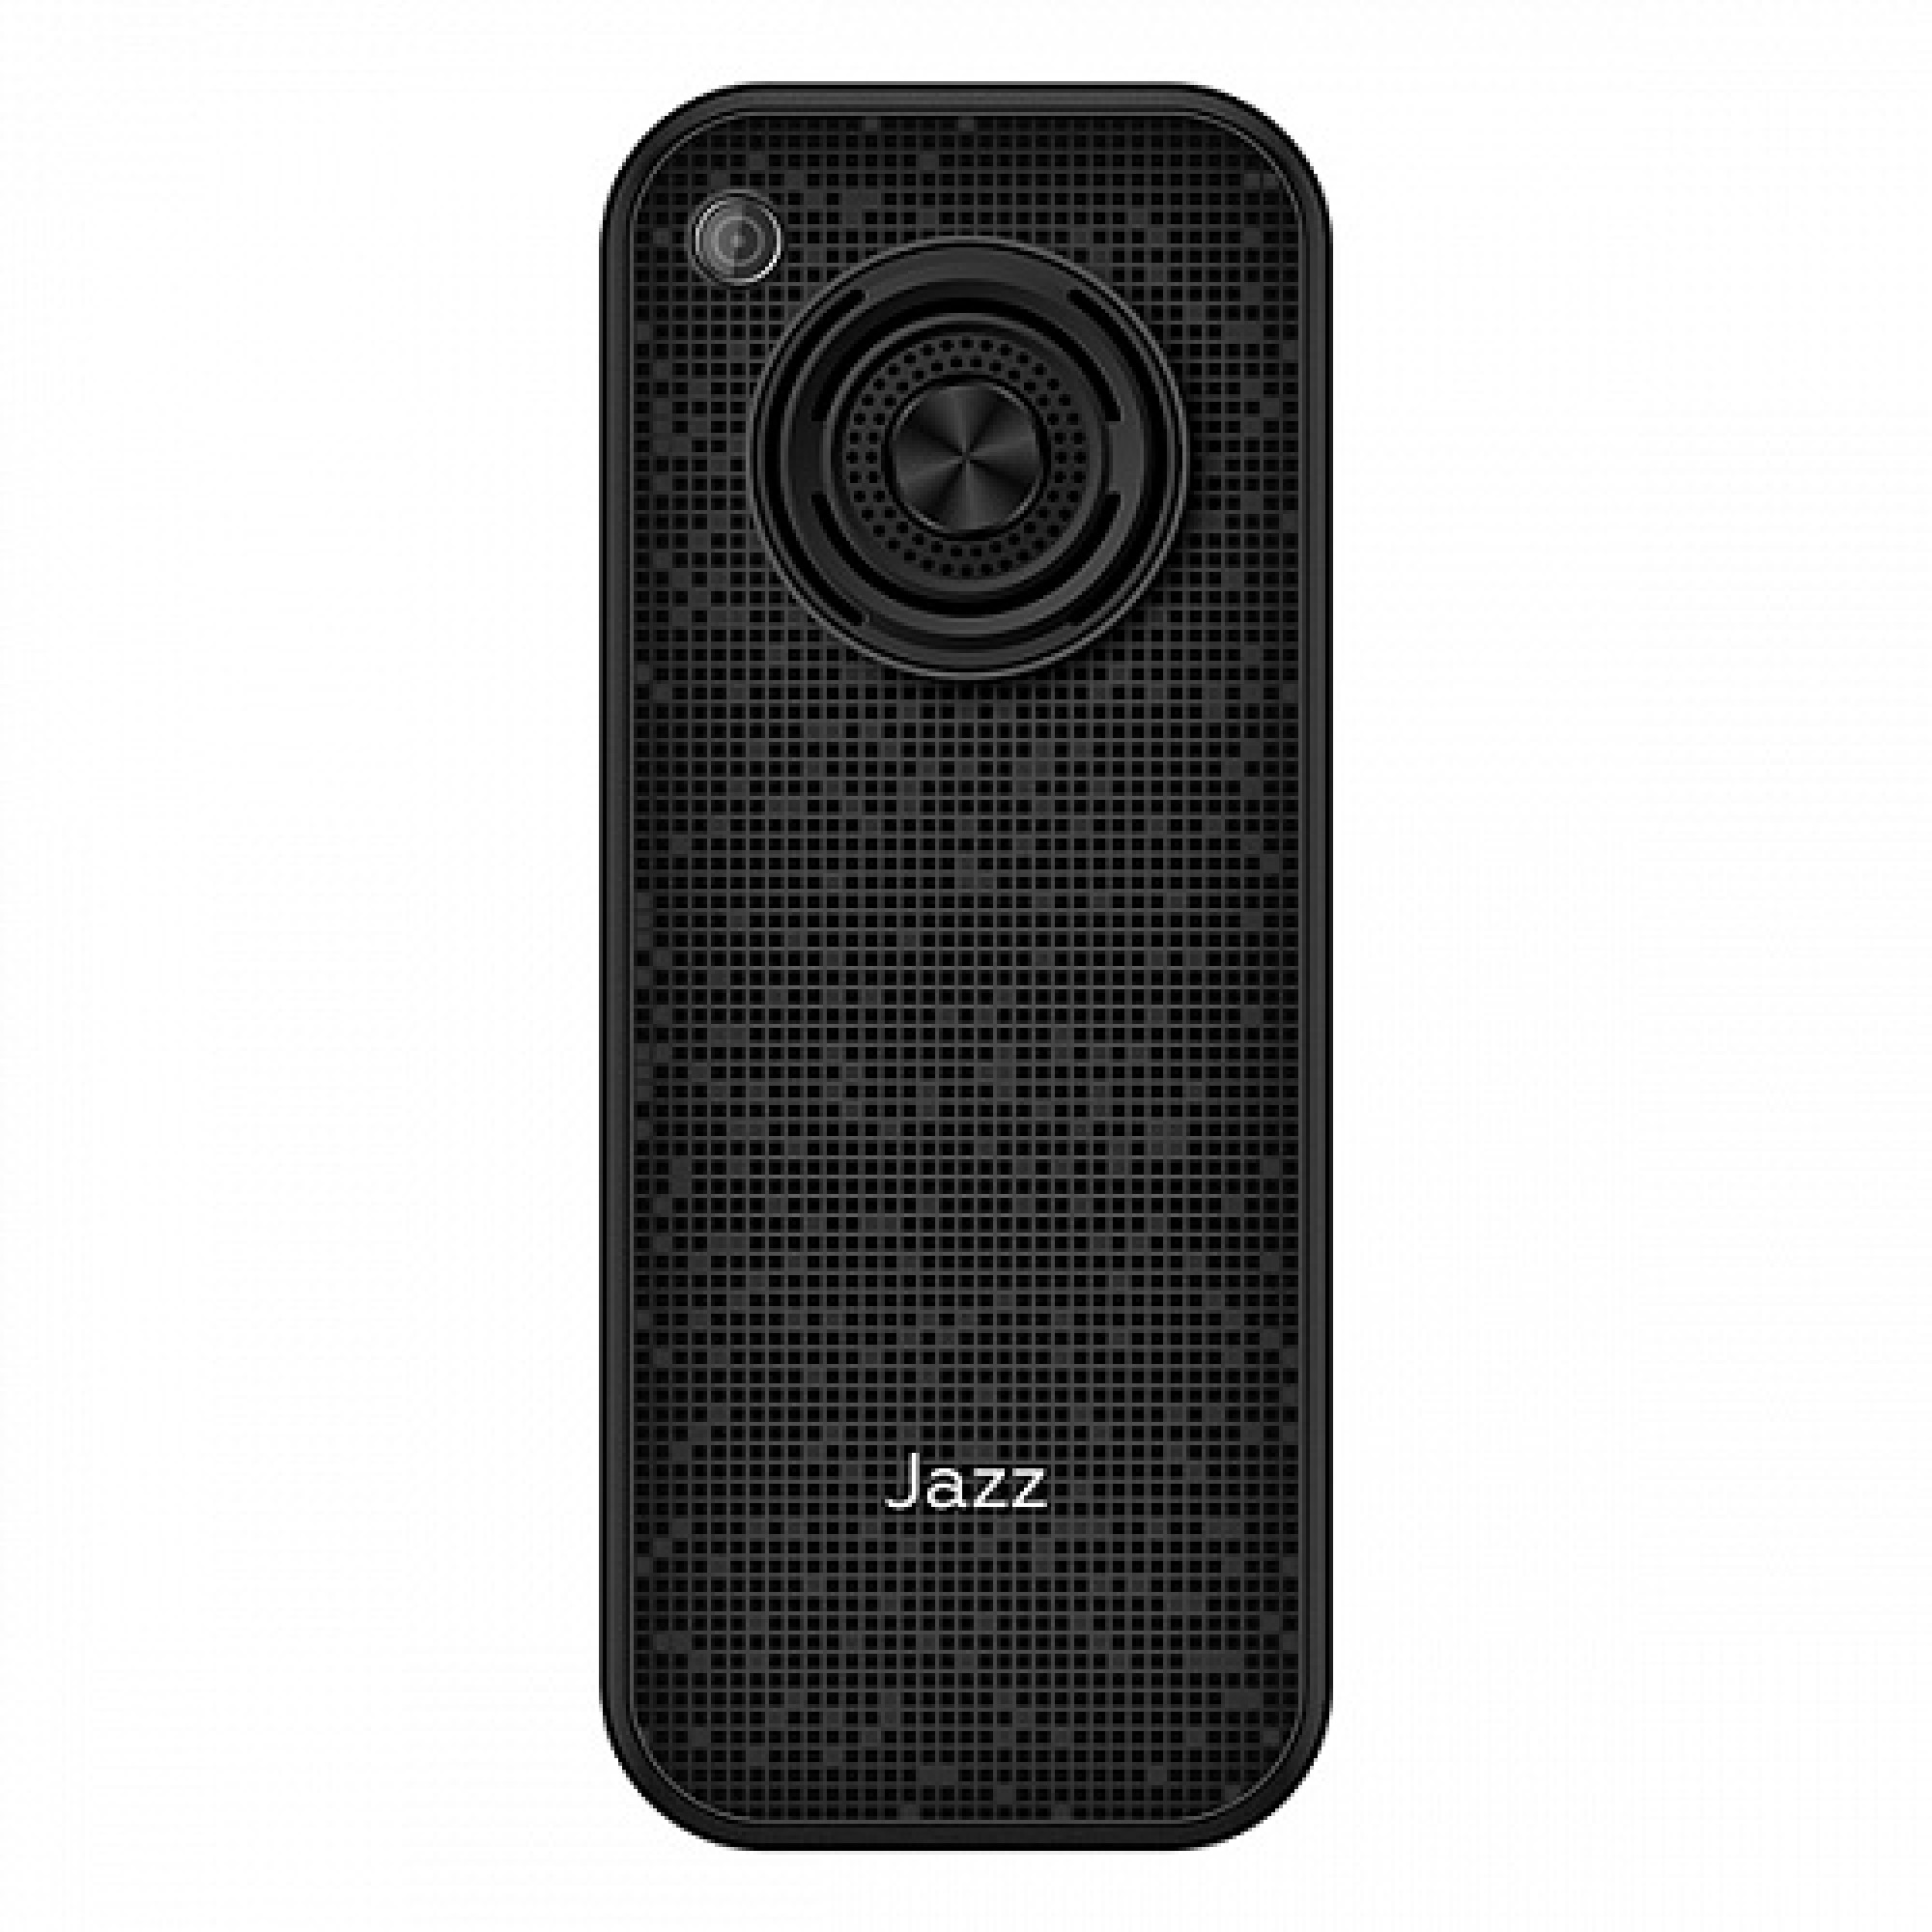 Мобильный телефон BQ BQ-2457 Jazz (черный)